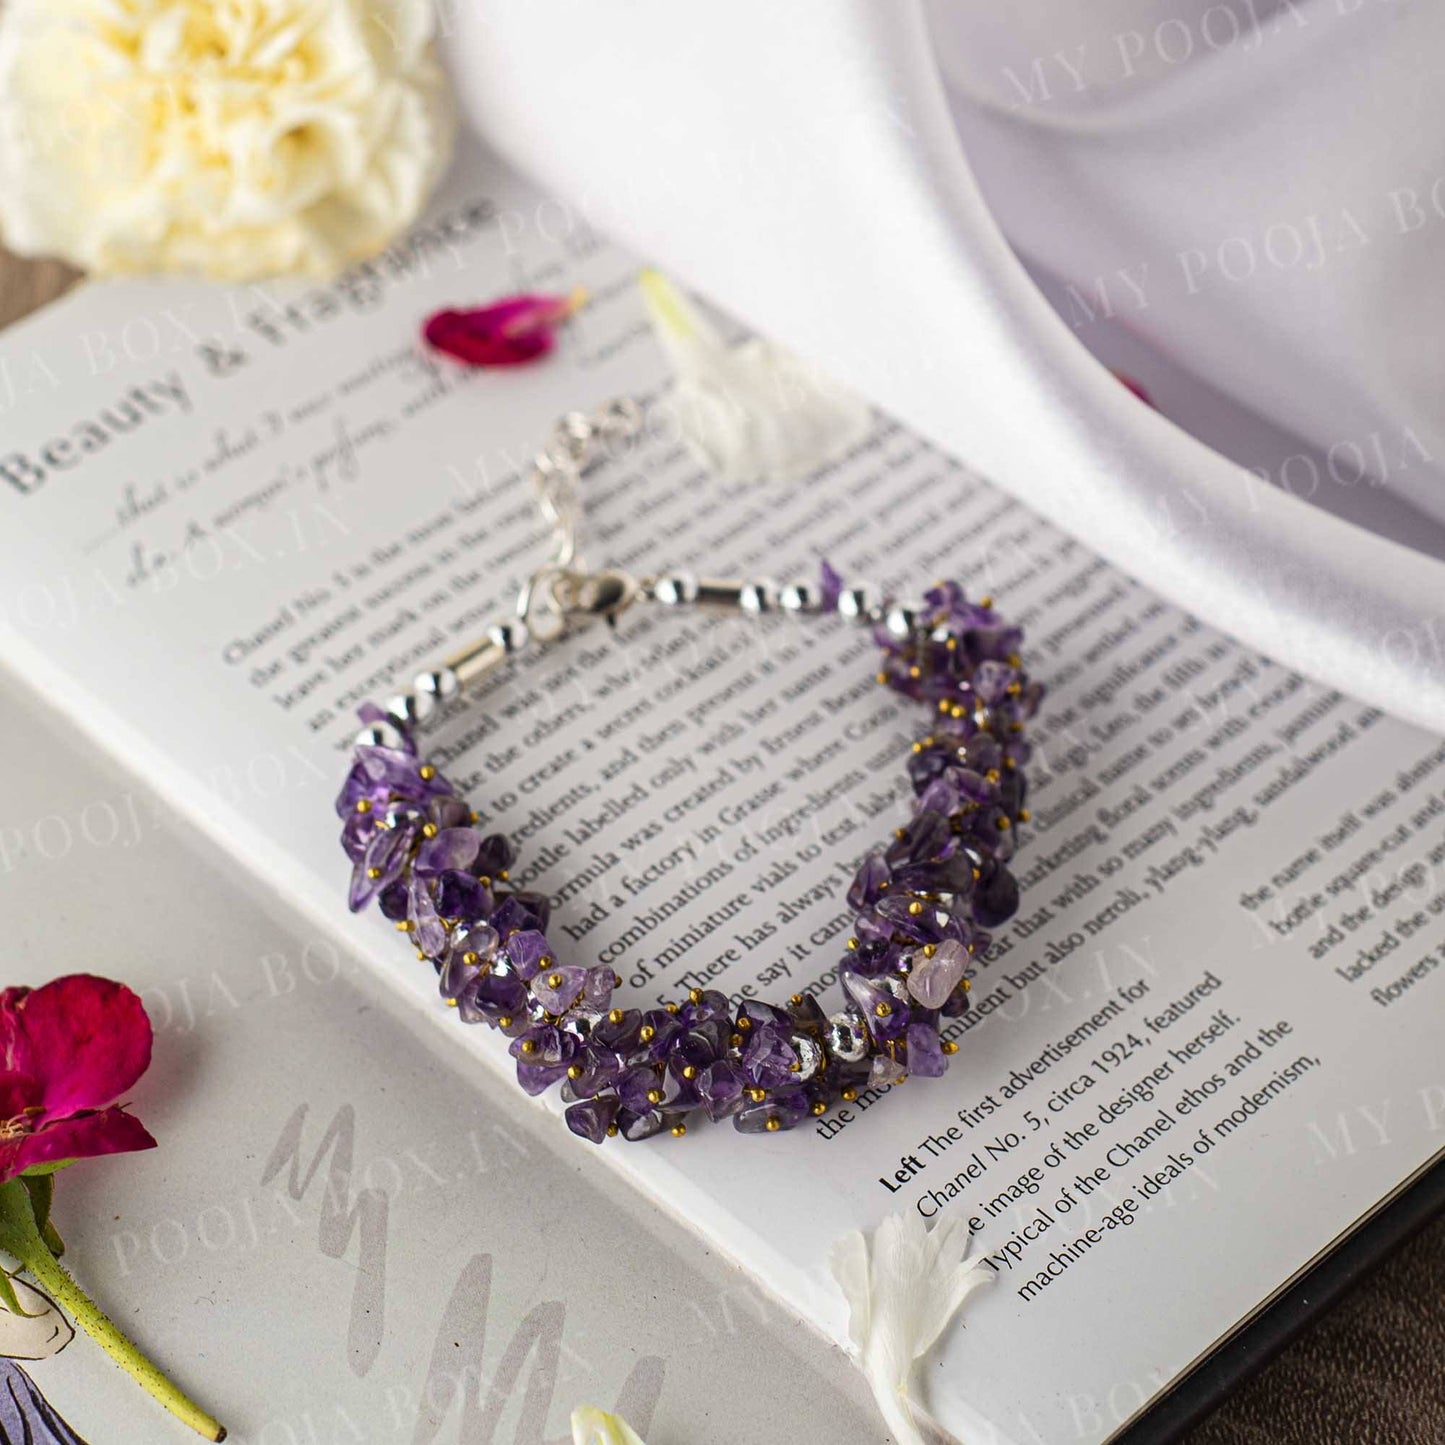 Amethyst bracelet meaning - The secrets of purple elegance